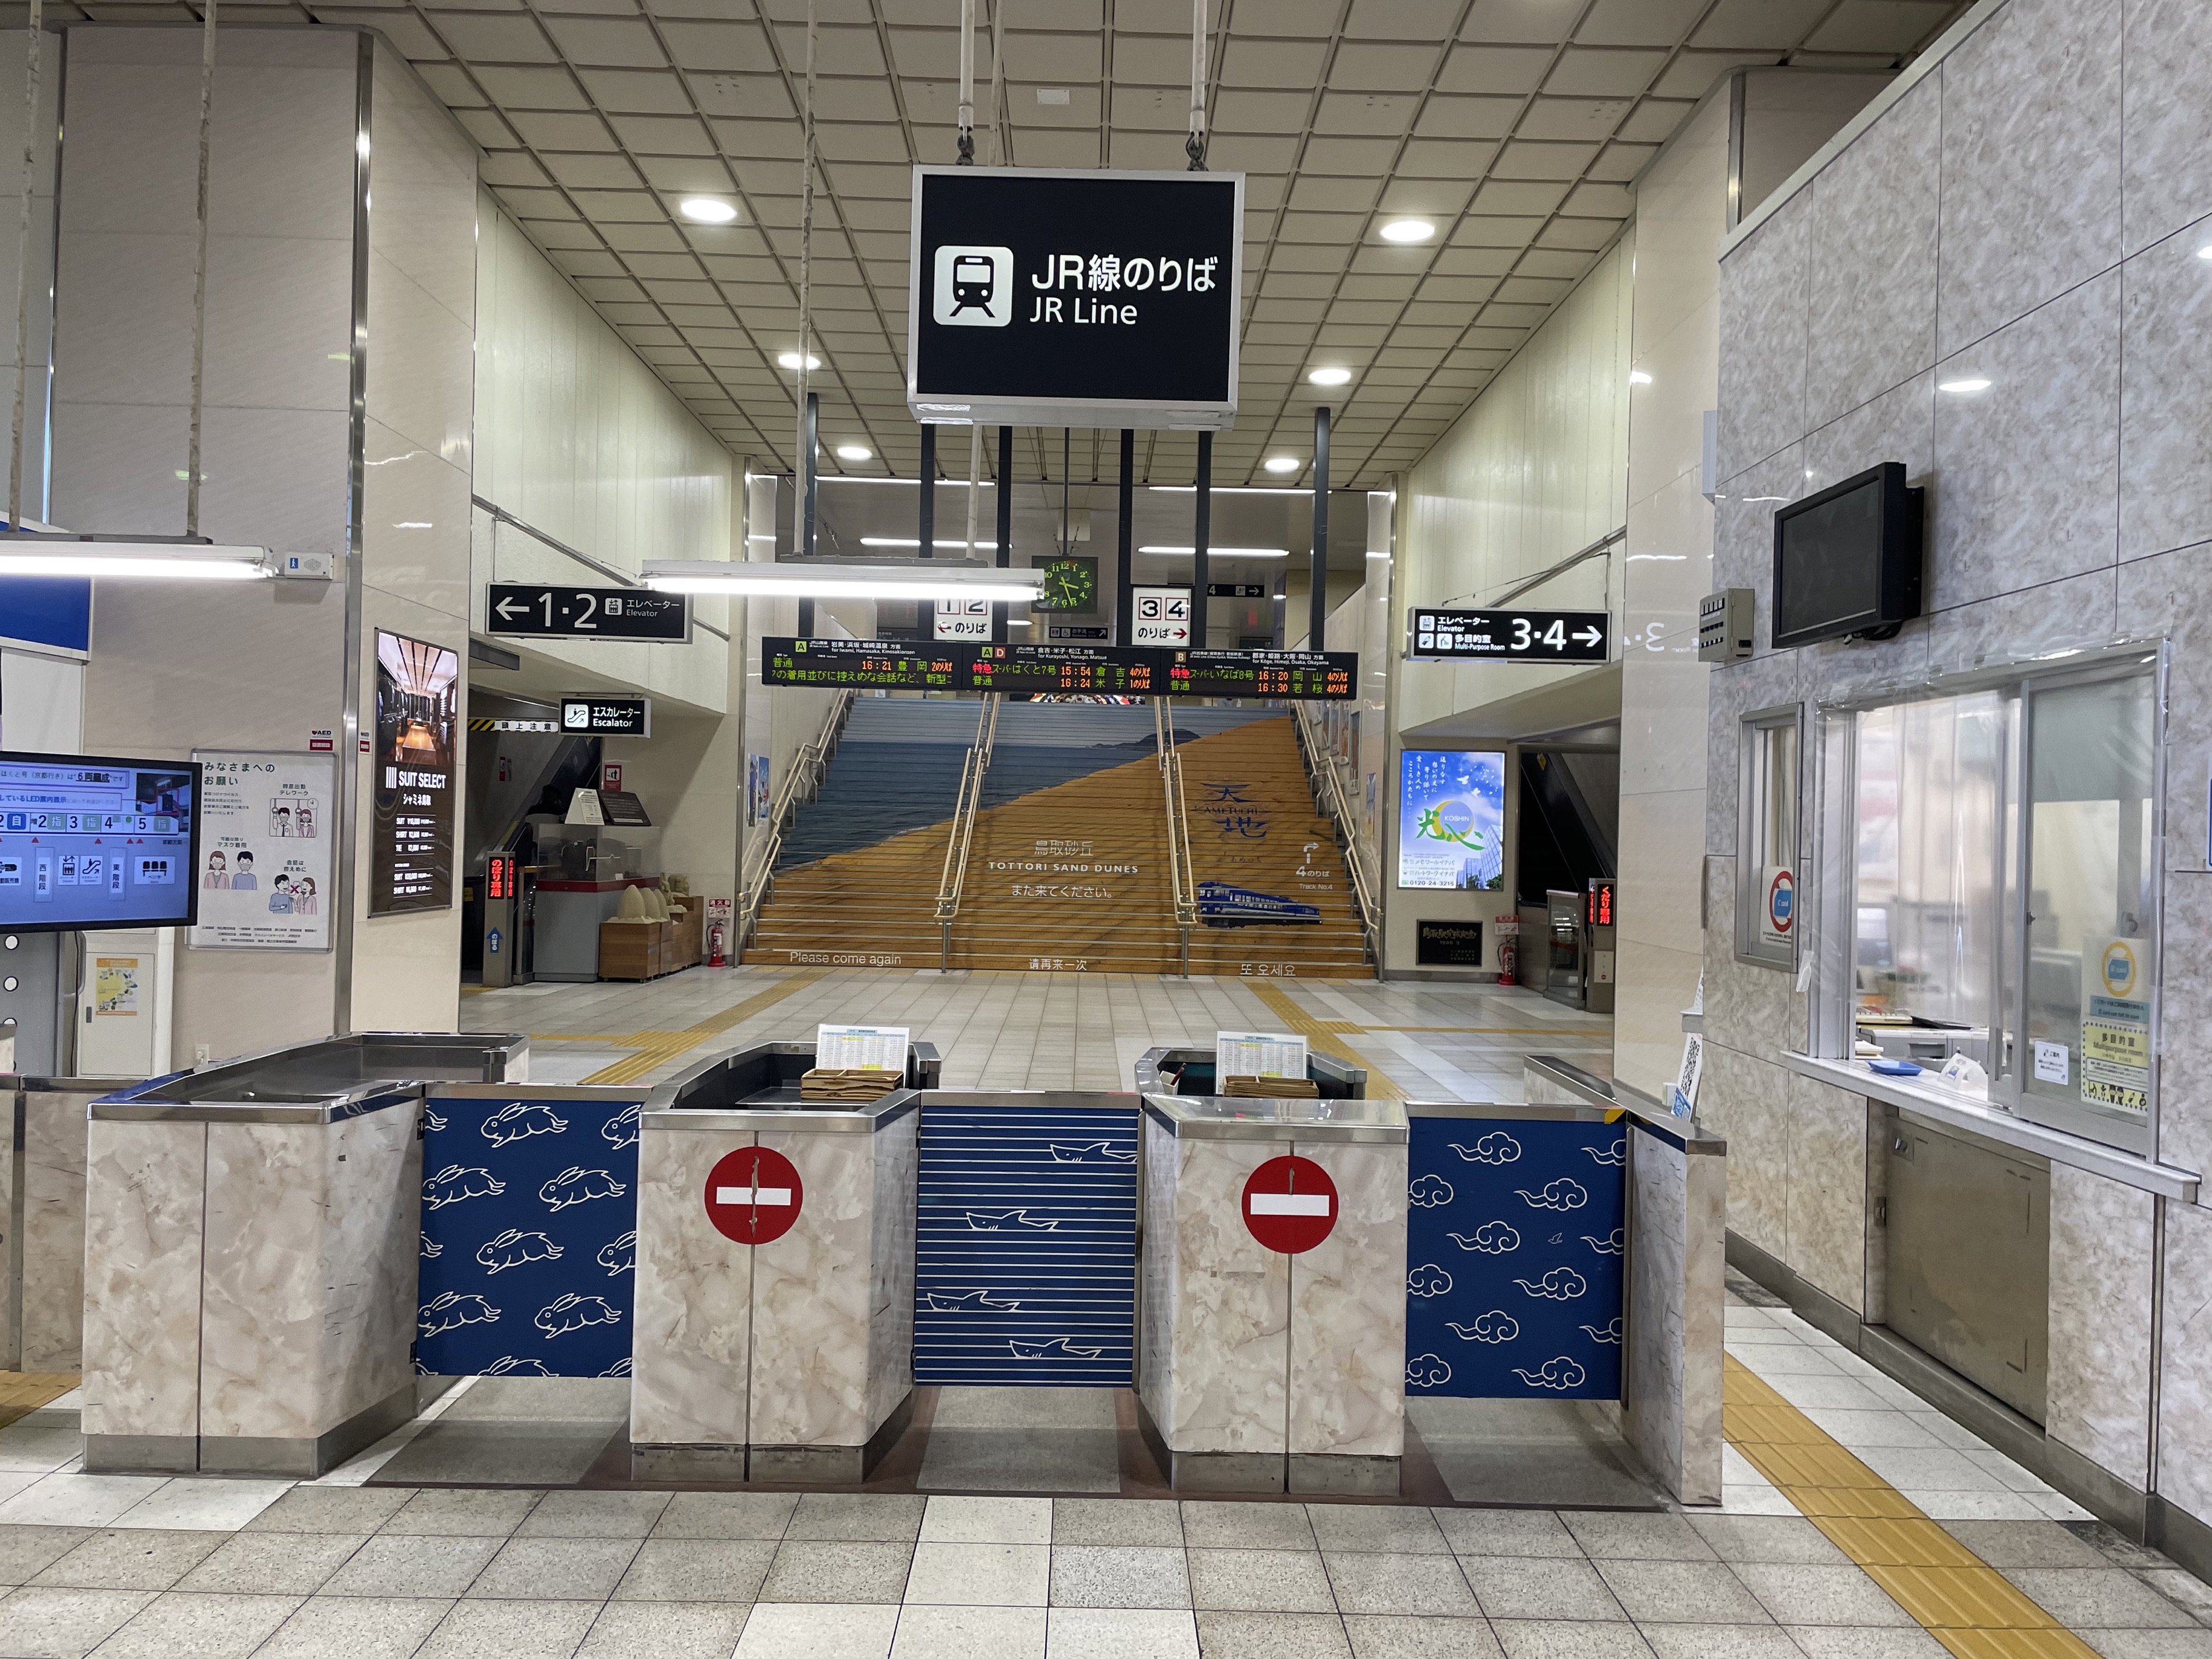 鳥取駅 時刻表一覧 - Yahoo!路線情報